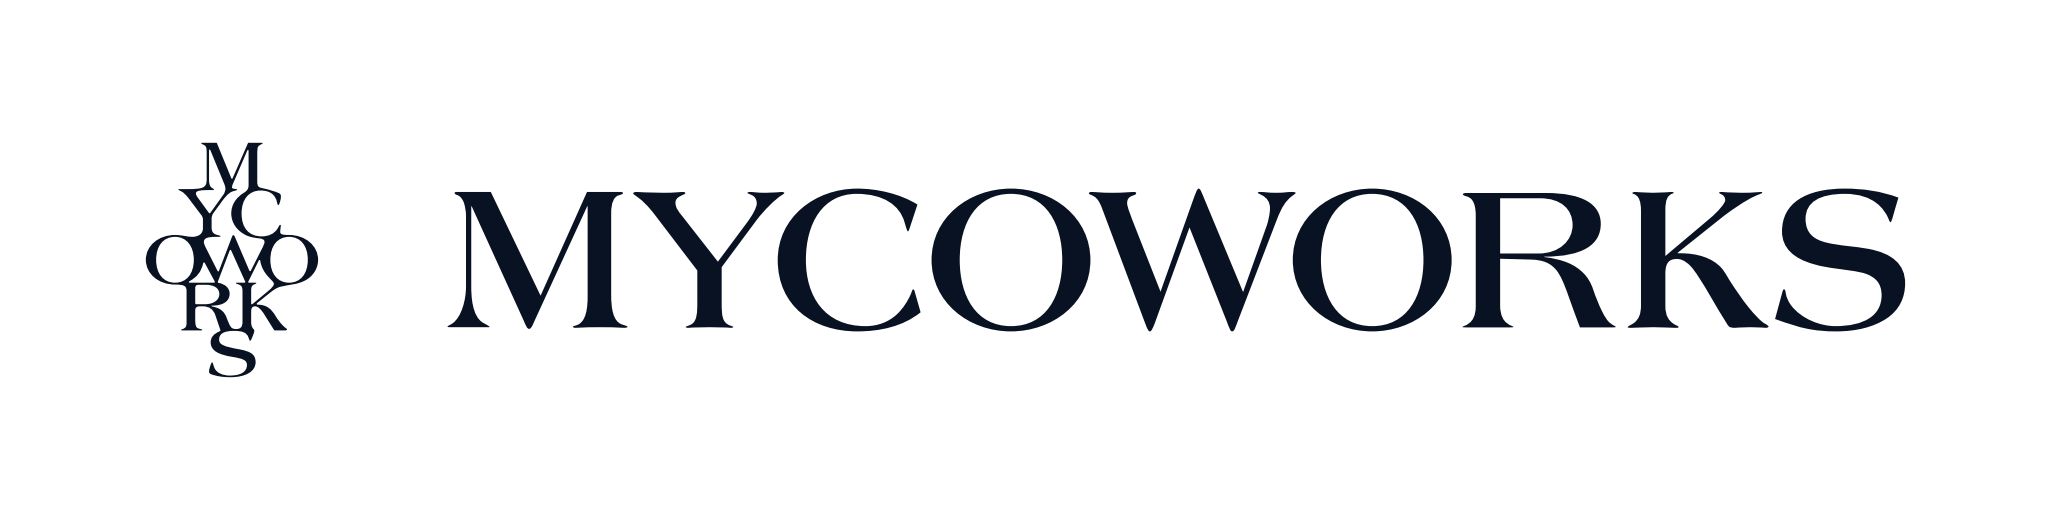 MycoWorks_Logo_WordMark_MW Logo Wordmark